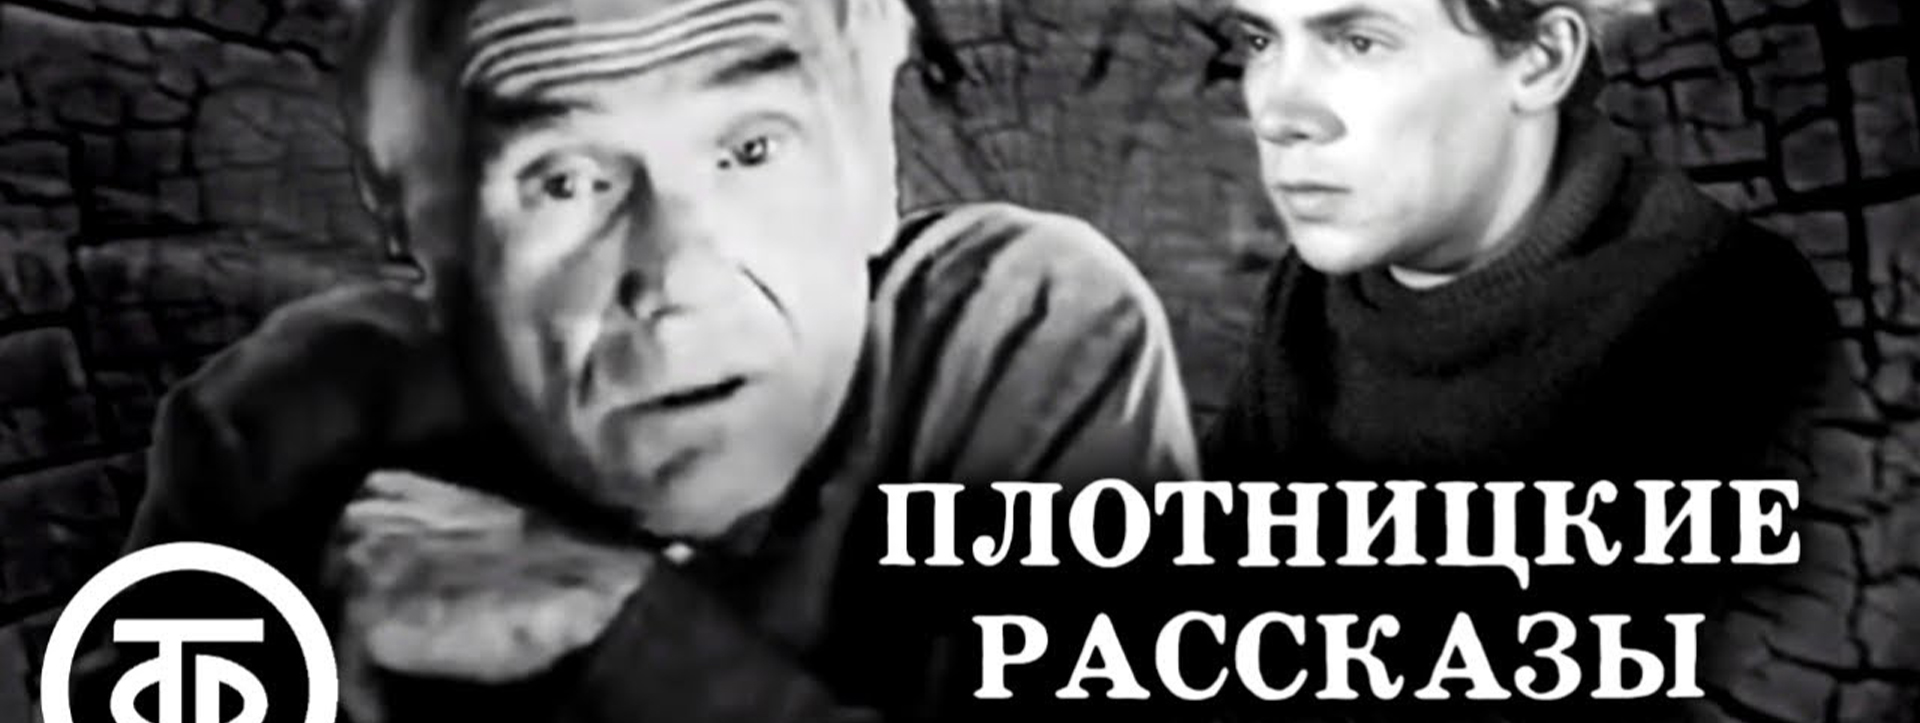 Проект «Беловский октябрь»: Василий Белов и советский кинематограф